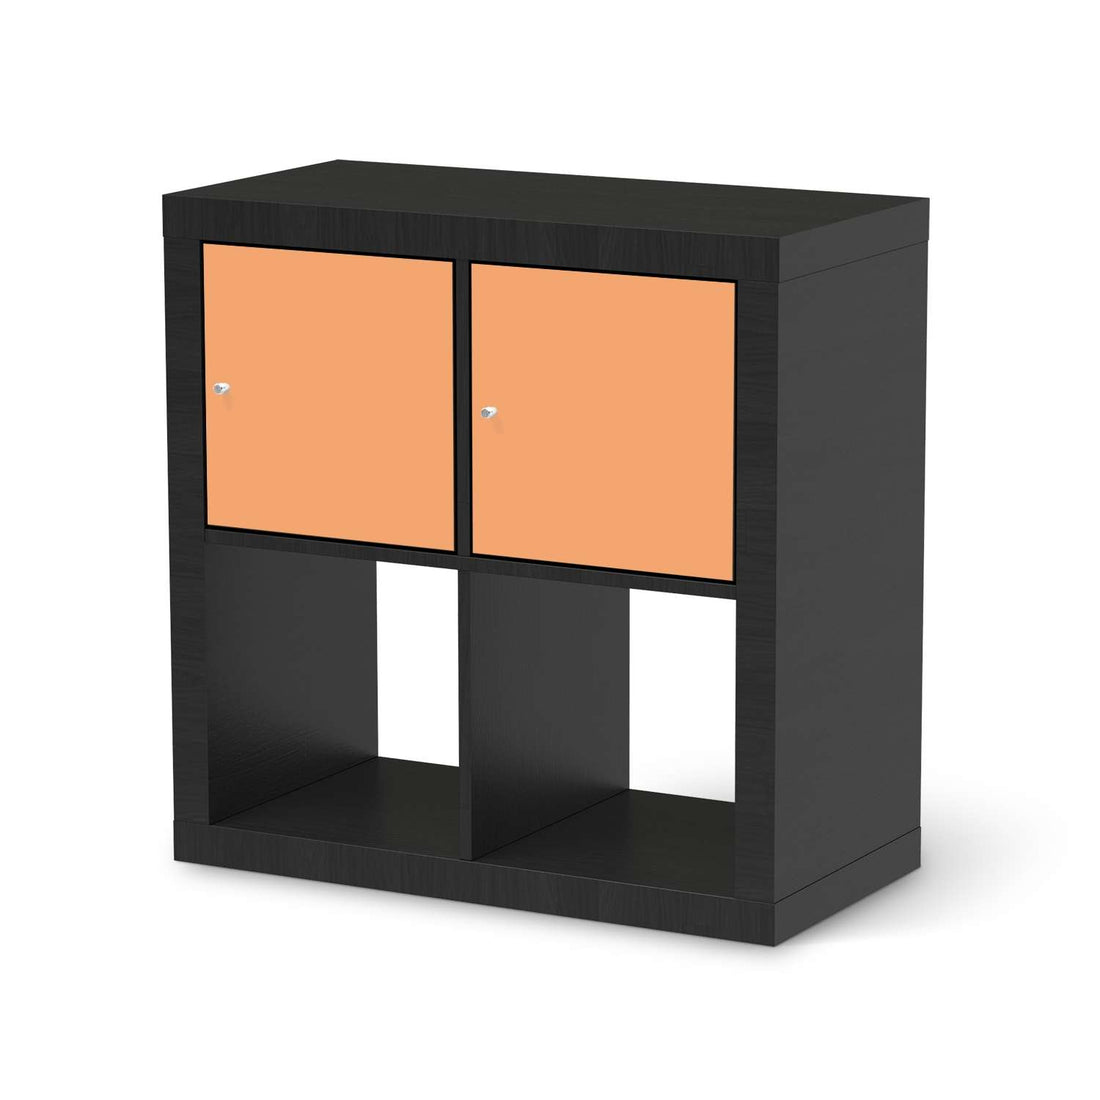 Möbel Klebefolie Orange Light - IKEA Expedit Regal 2 Türen Quer - schwarz